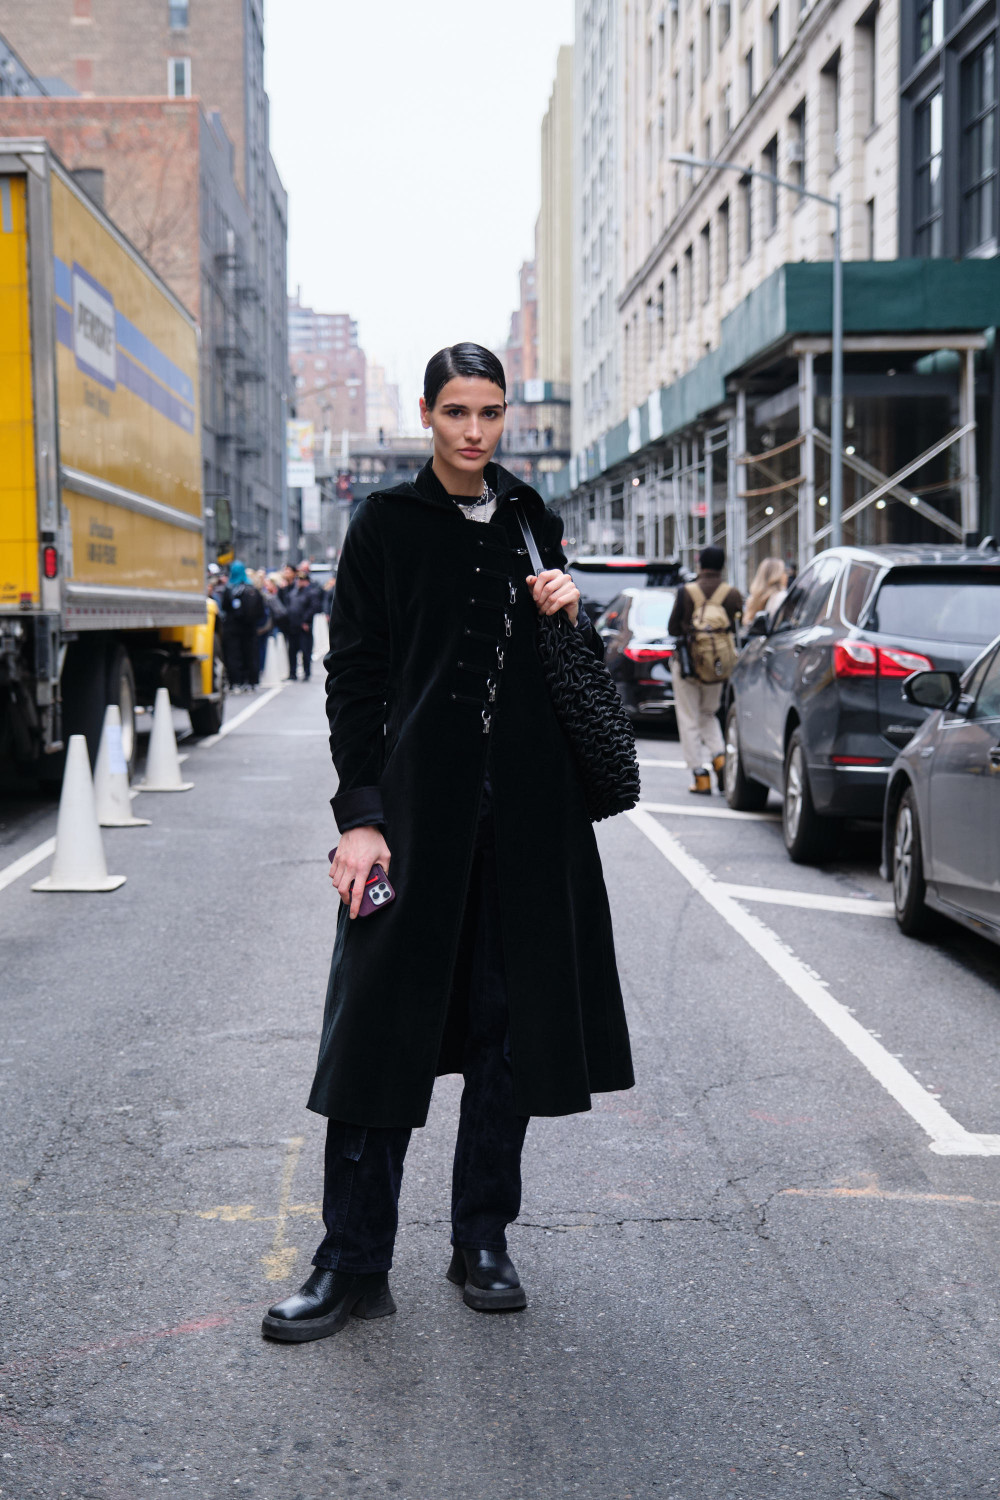 Бриджи, сумка-сердце и fluffy-детали: стритстайл-хроника Недели моды в Нью-Йорке